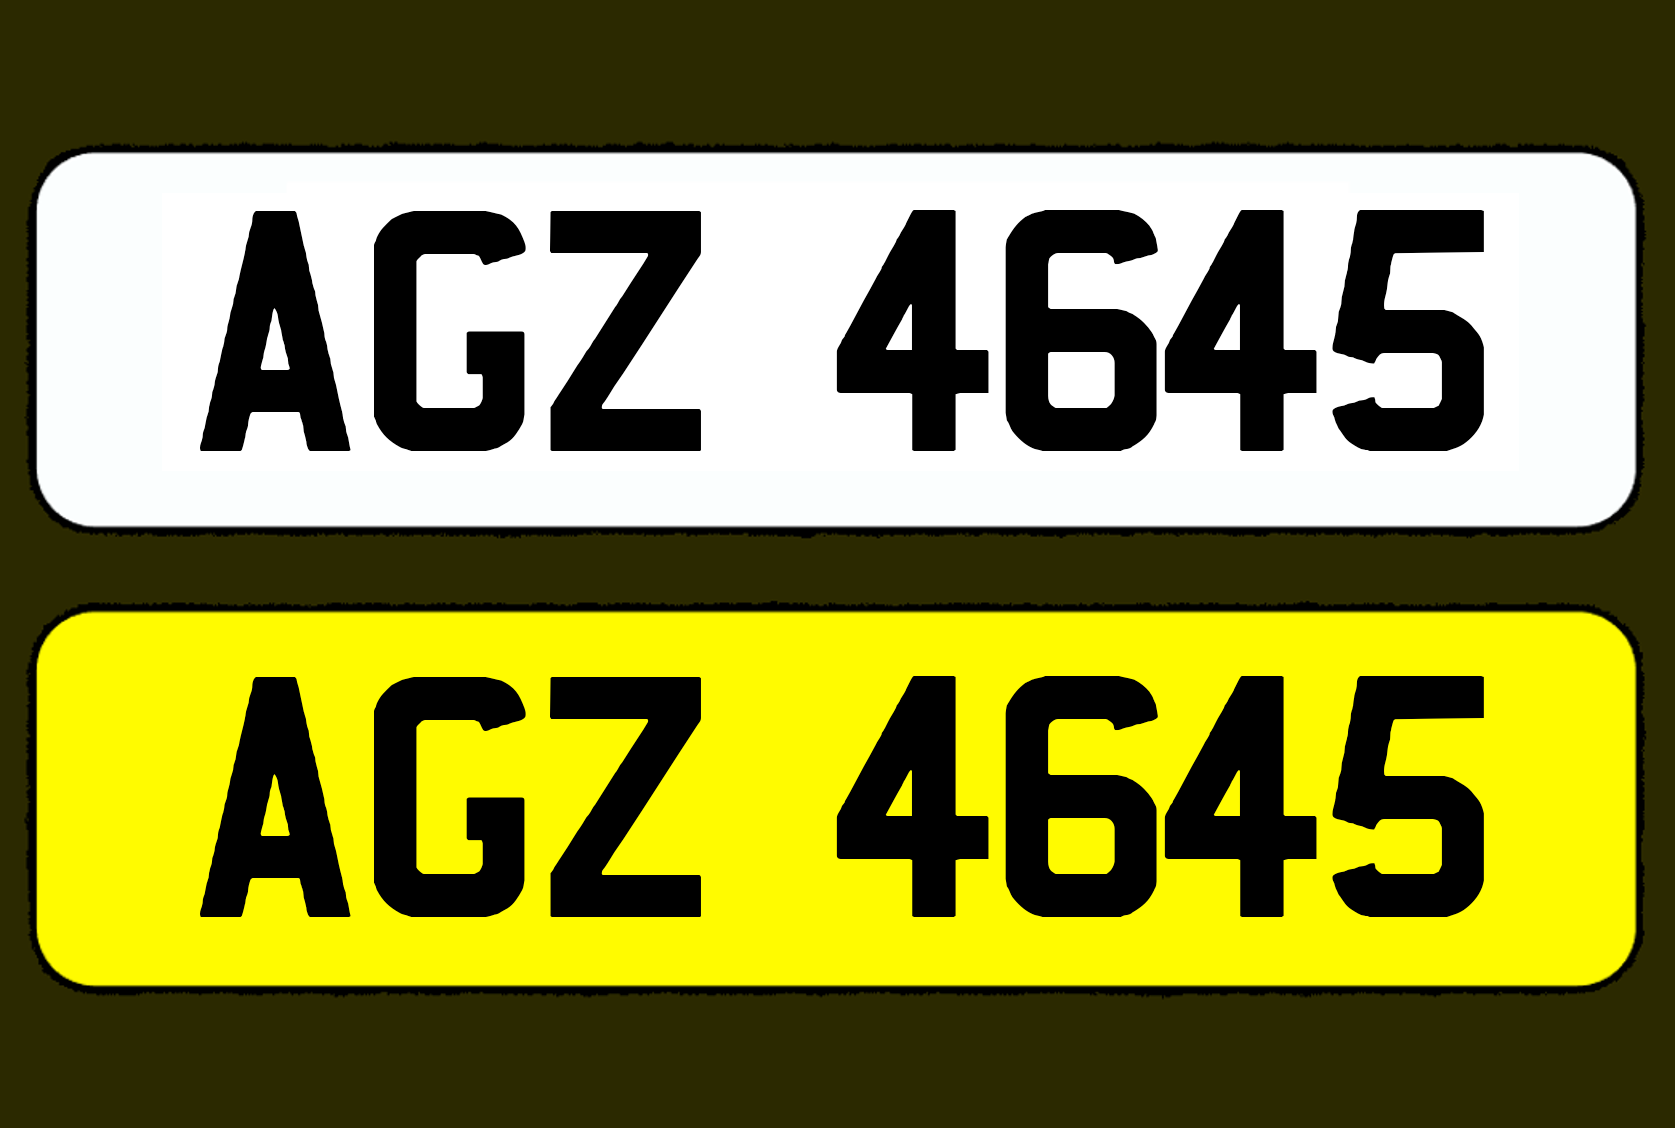 AGZ 4645